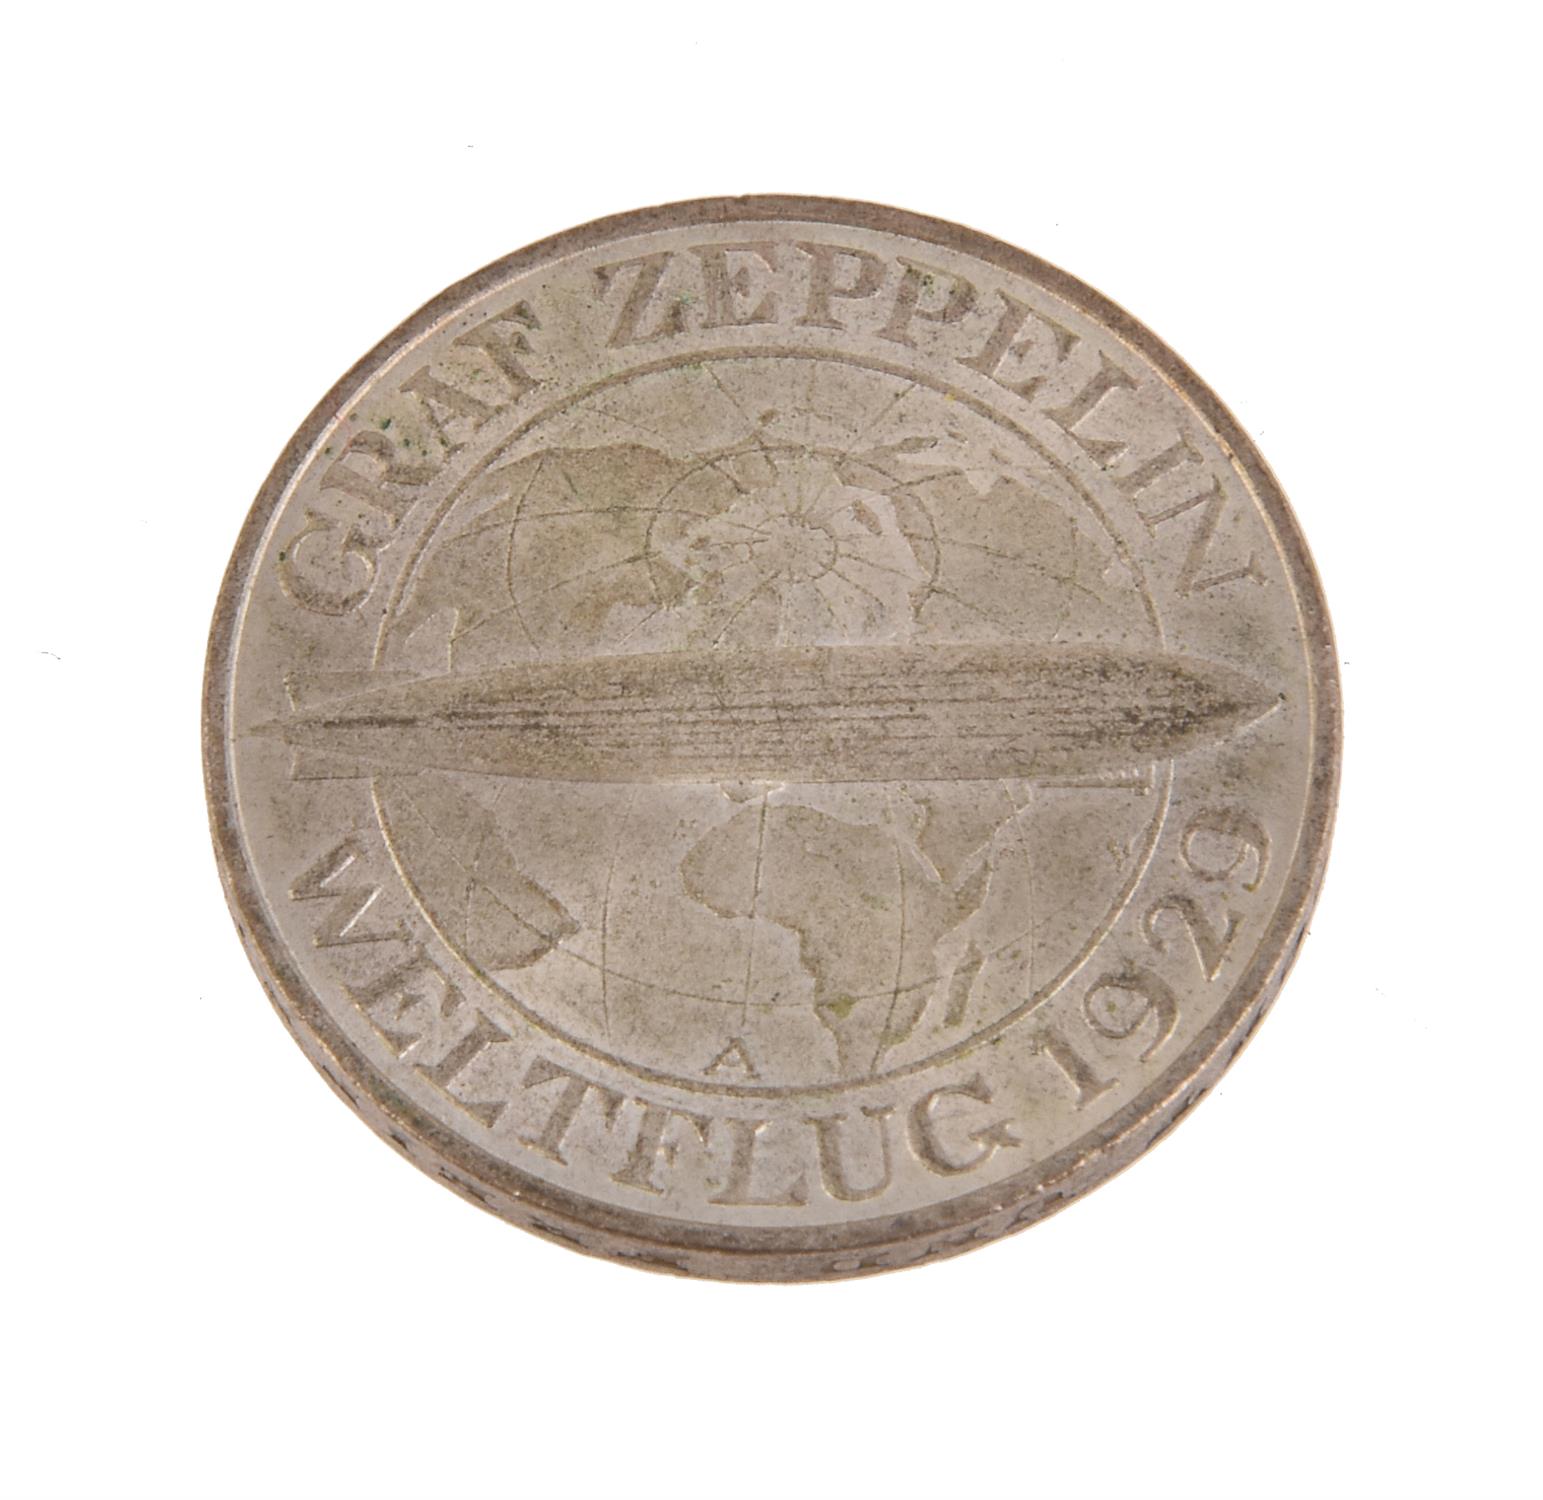 Germany-5, Weimar Republic, 3-Reichsmark 1930A